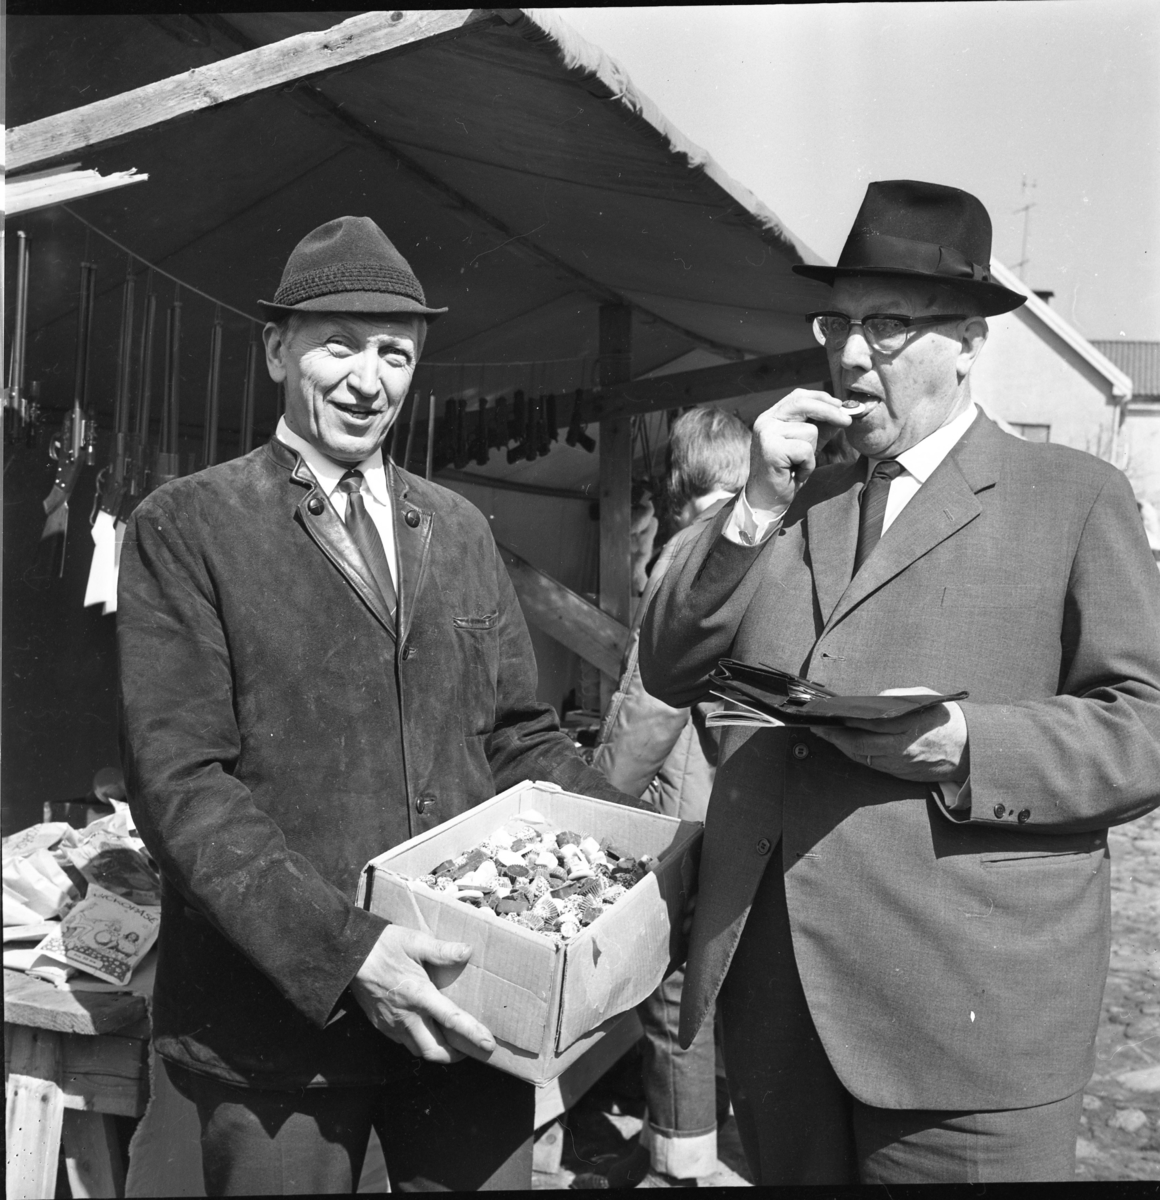 Höstmarknad i Gränna 1968. Gunnar Fransson - Gunnars-konfektyr - i hatt och mockajacka håller fram en kartong med karameller för marknadsföreståndaren (och polisen) Arvid Lindgren som låter sig smaka med plånboken uppslagen i näven. Det är möjligt att Lindgren, i hatt och kostym, går runt för att ta upp marknadsavgiften.